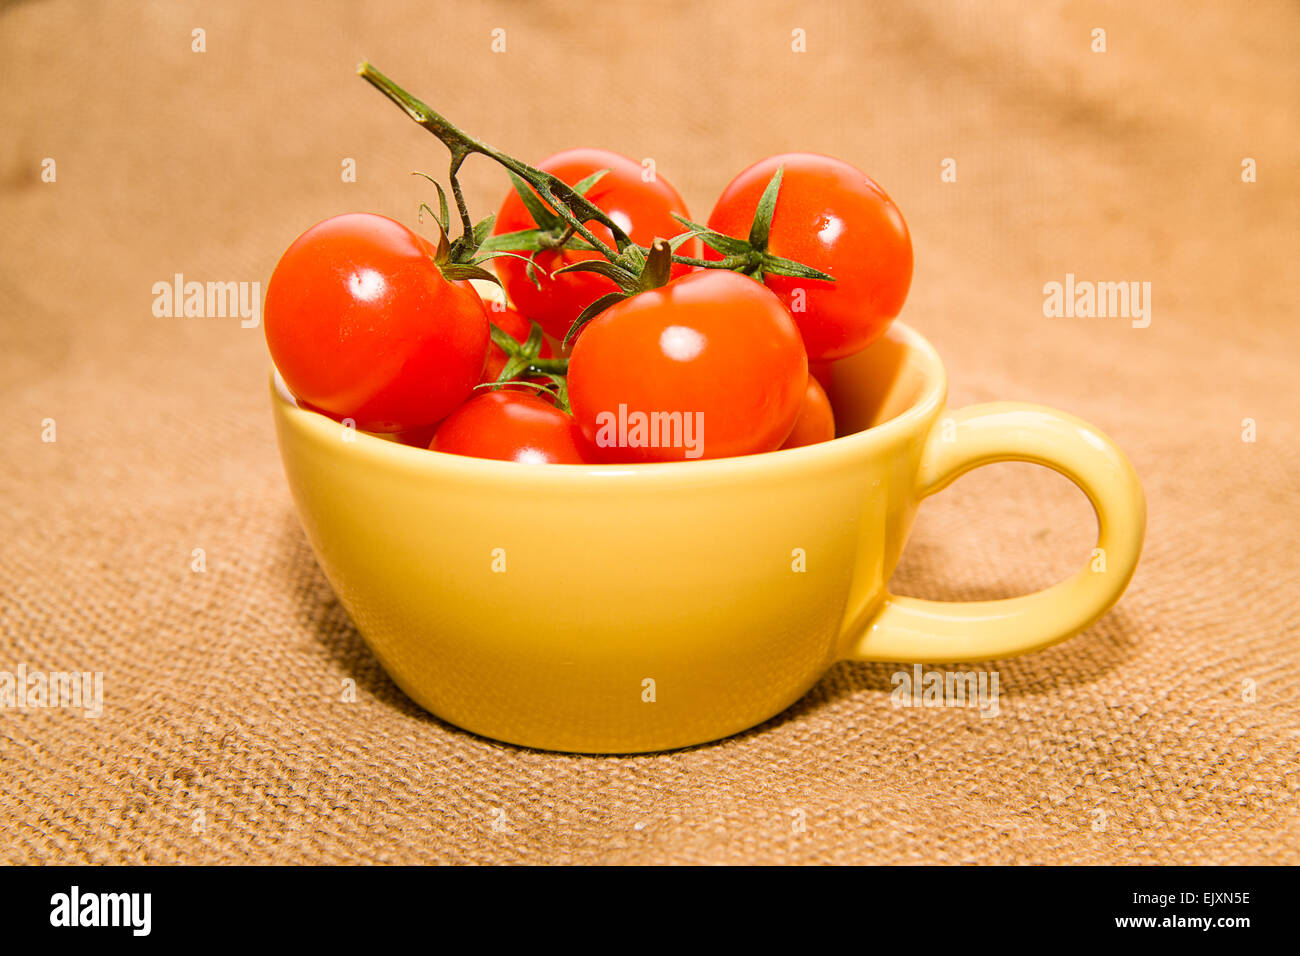 Pomodori ciliegia in una tazza di colore giallo sul panno vecchio Foto Stock